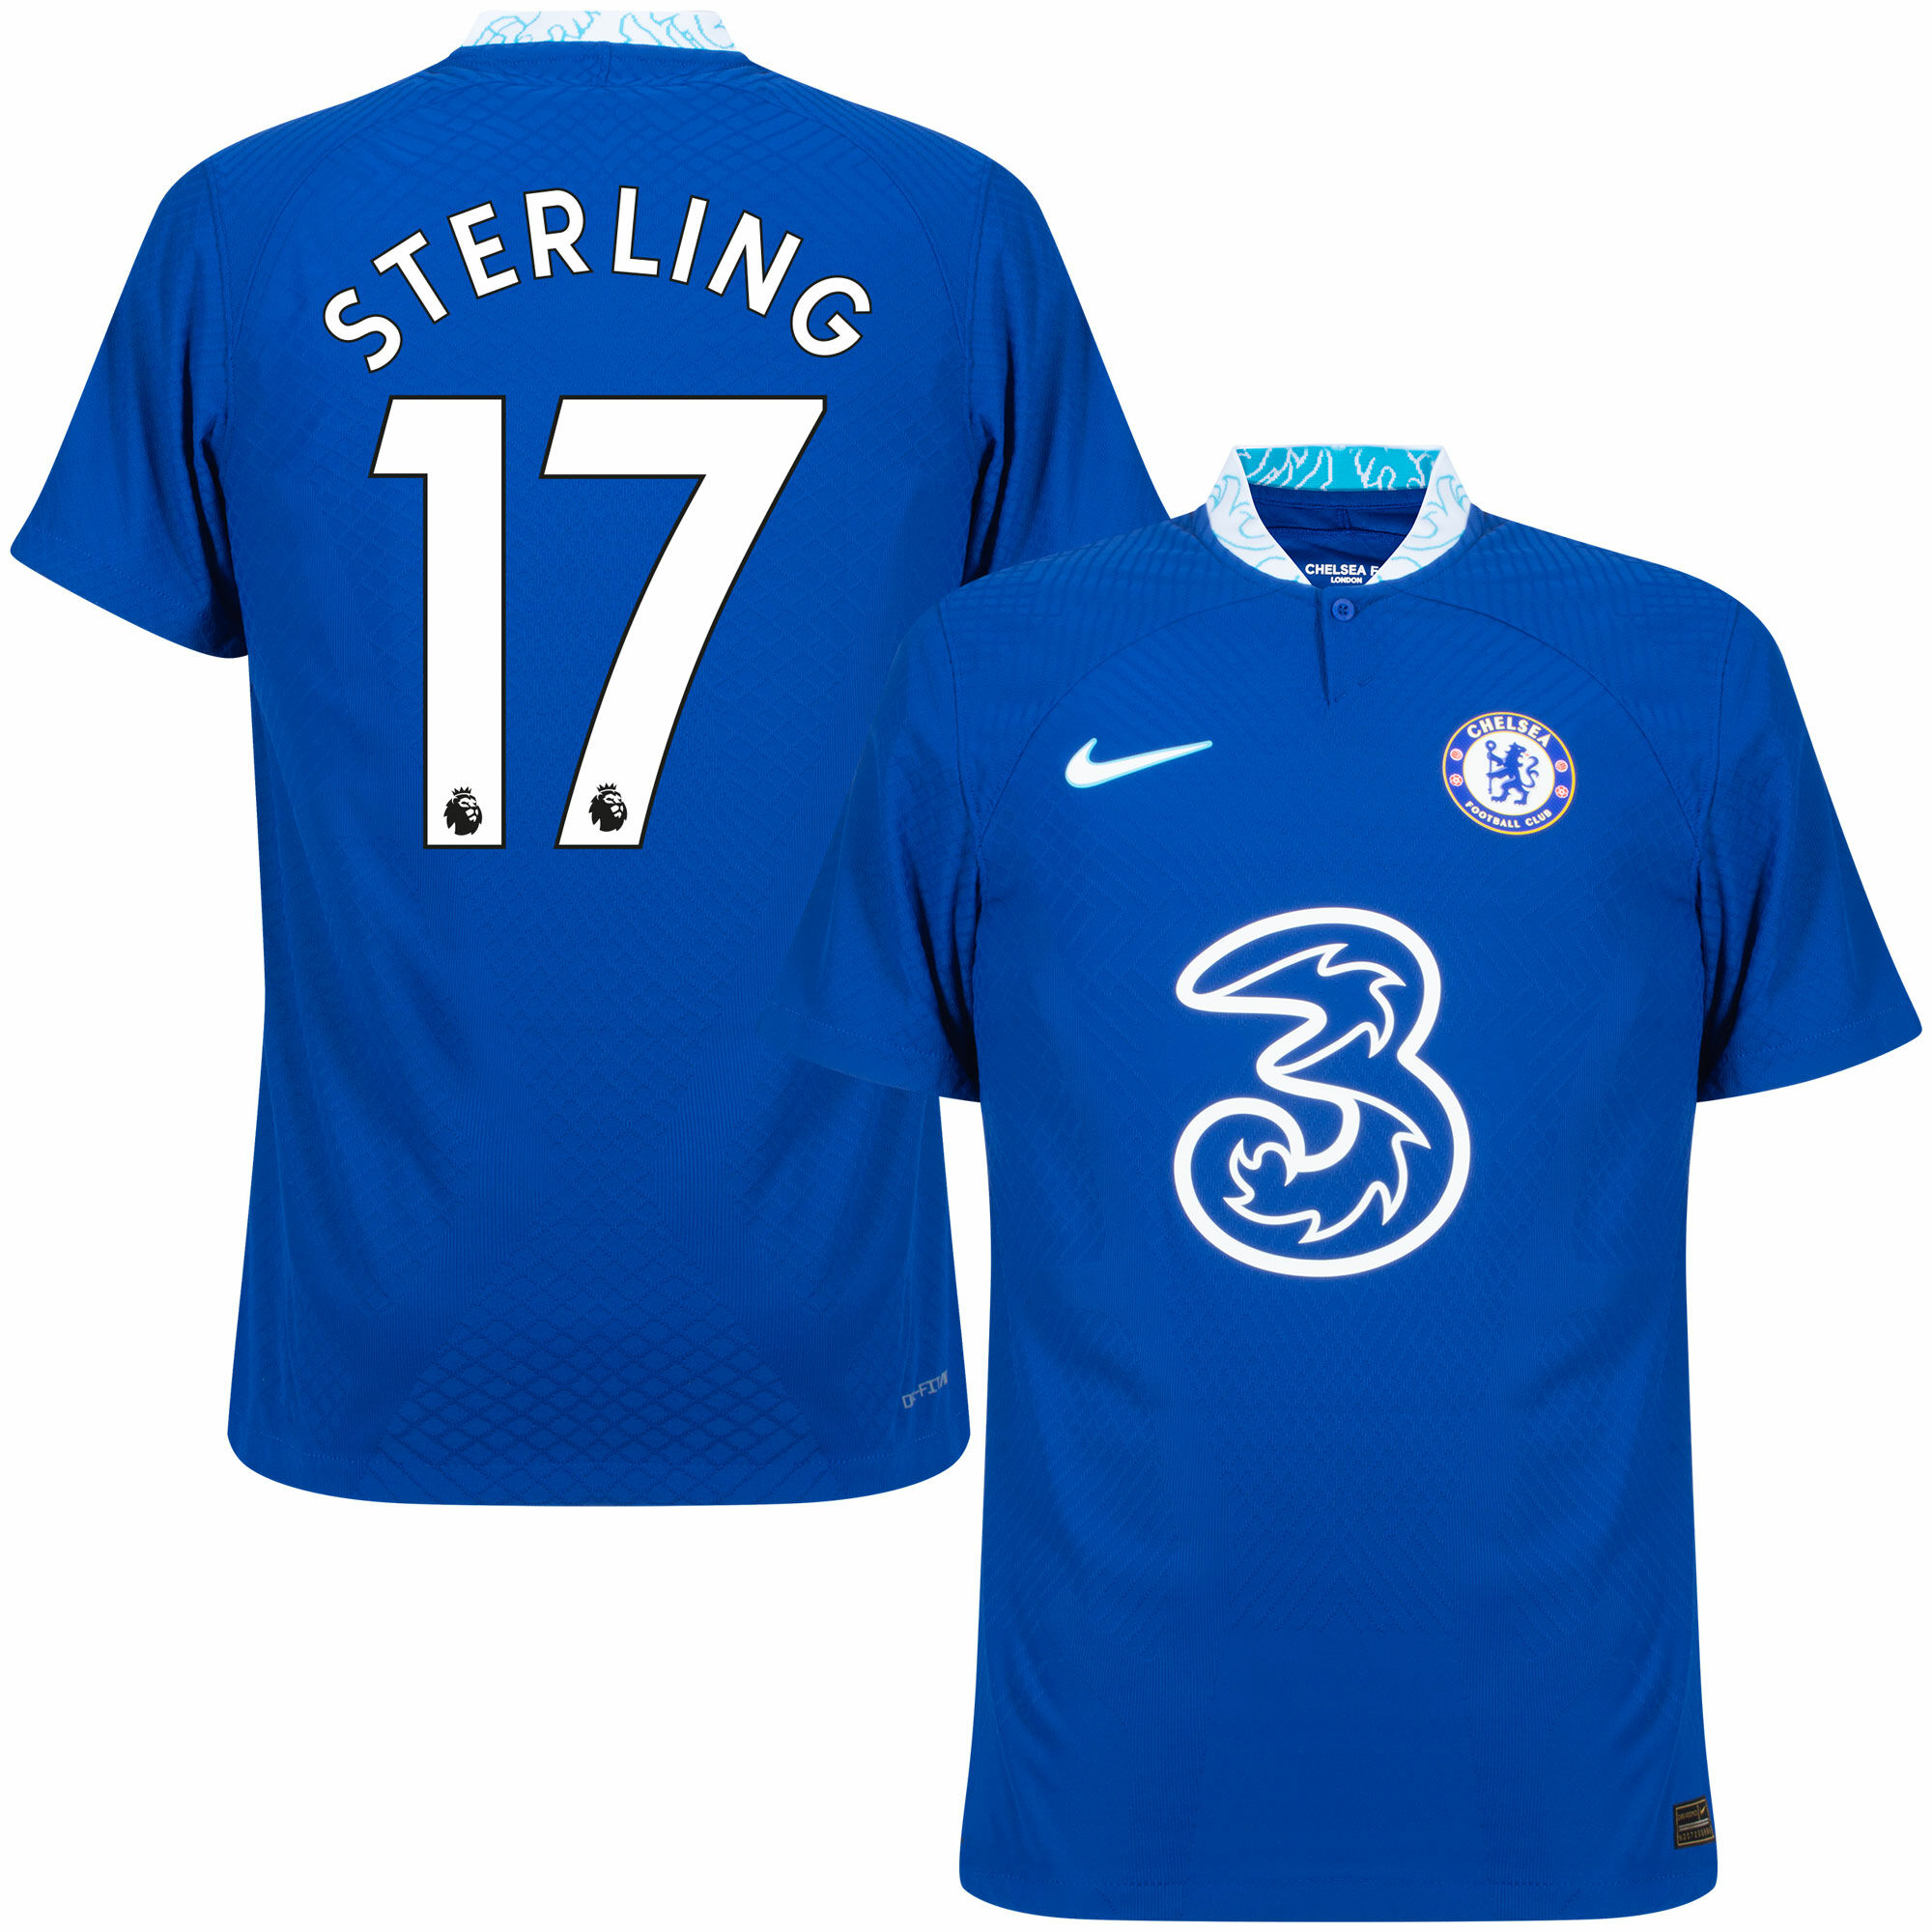 Chelsea - Dres fotbalový "Match" - číslo 17, Raheem Sterling, Premier League, domácí, sezóna 2022/23, Dri-FIT ADV, modrý